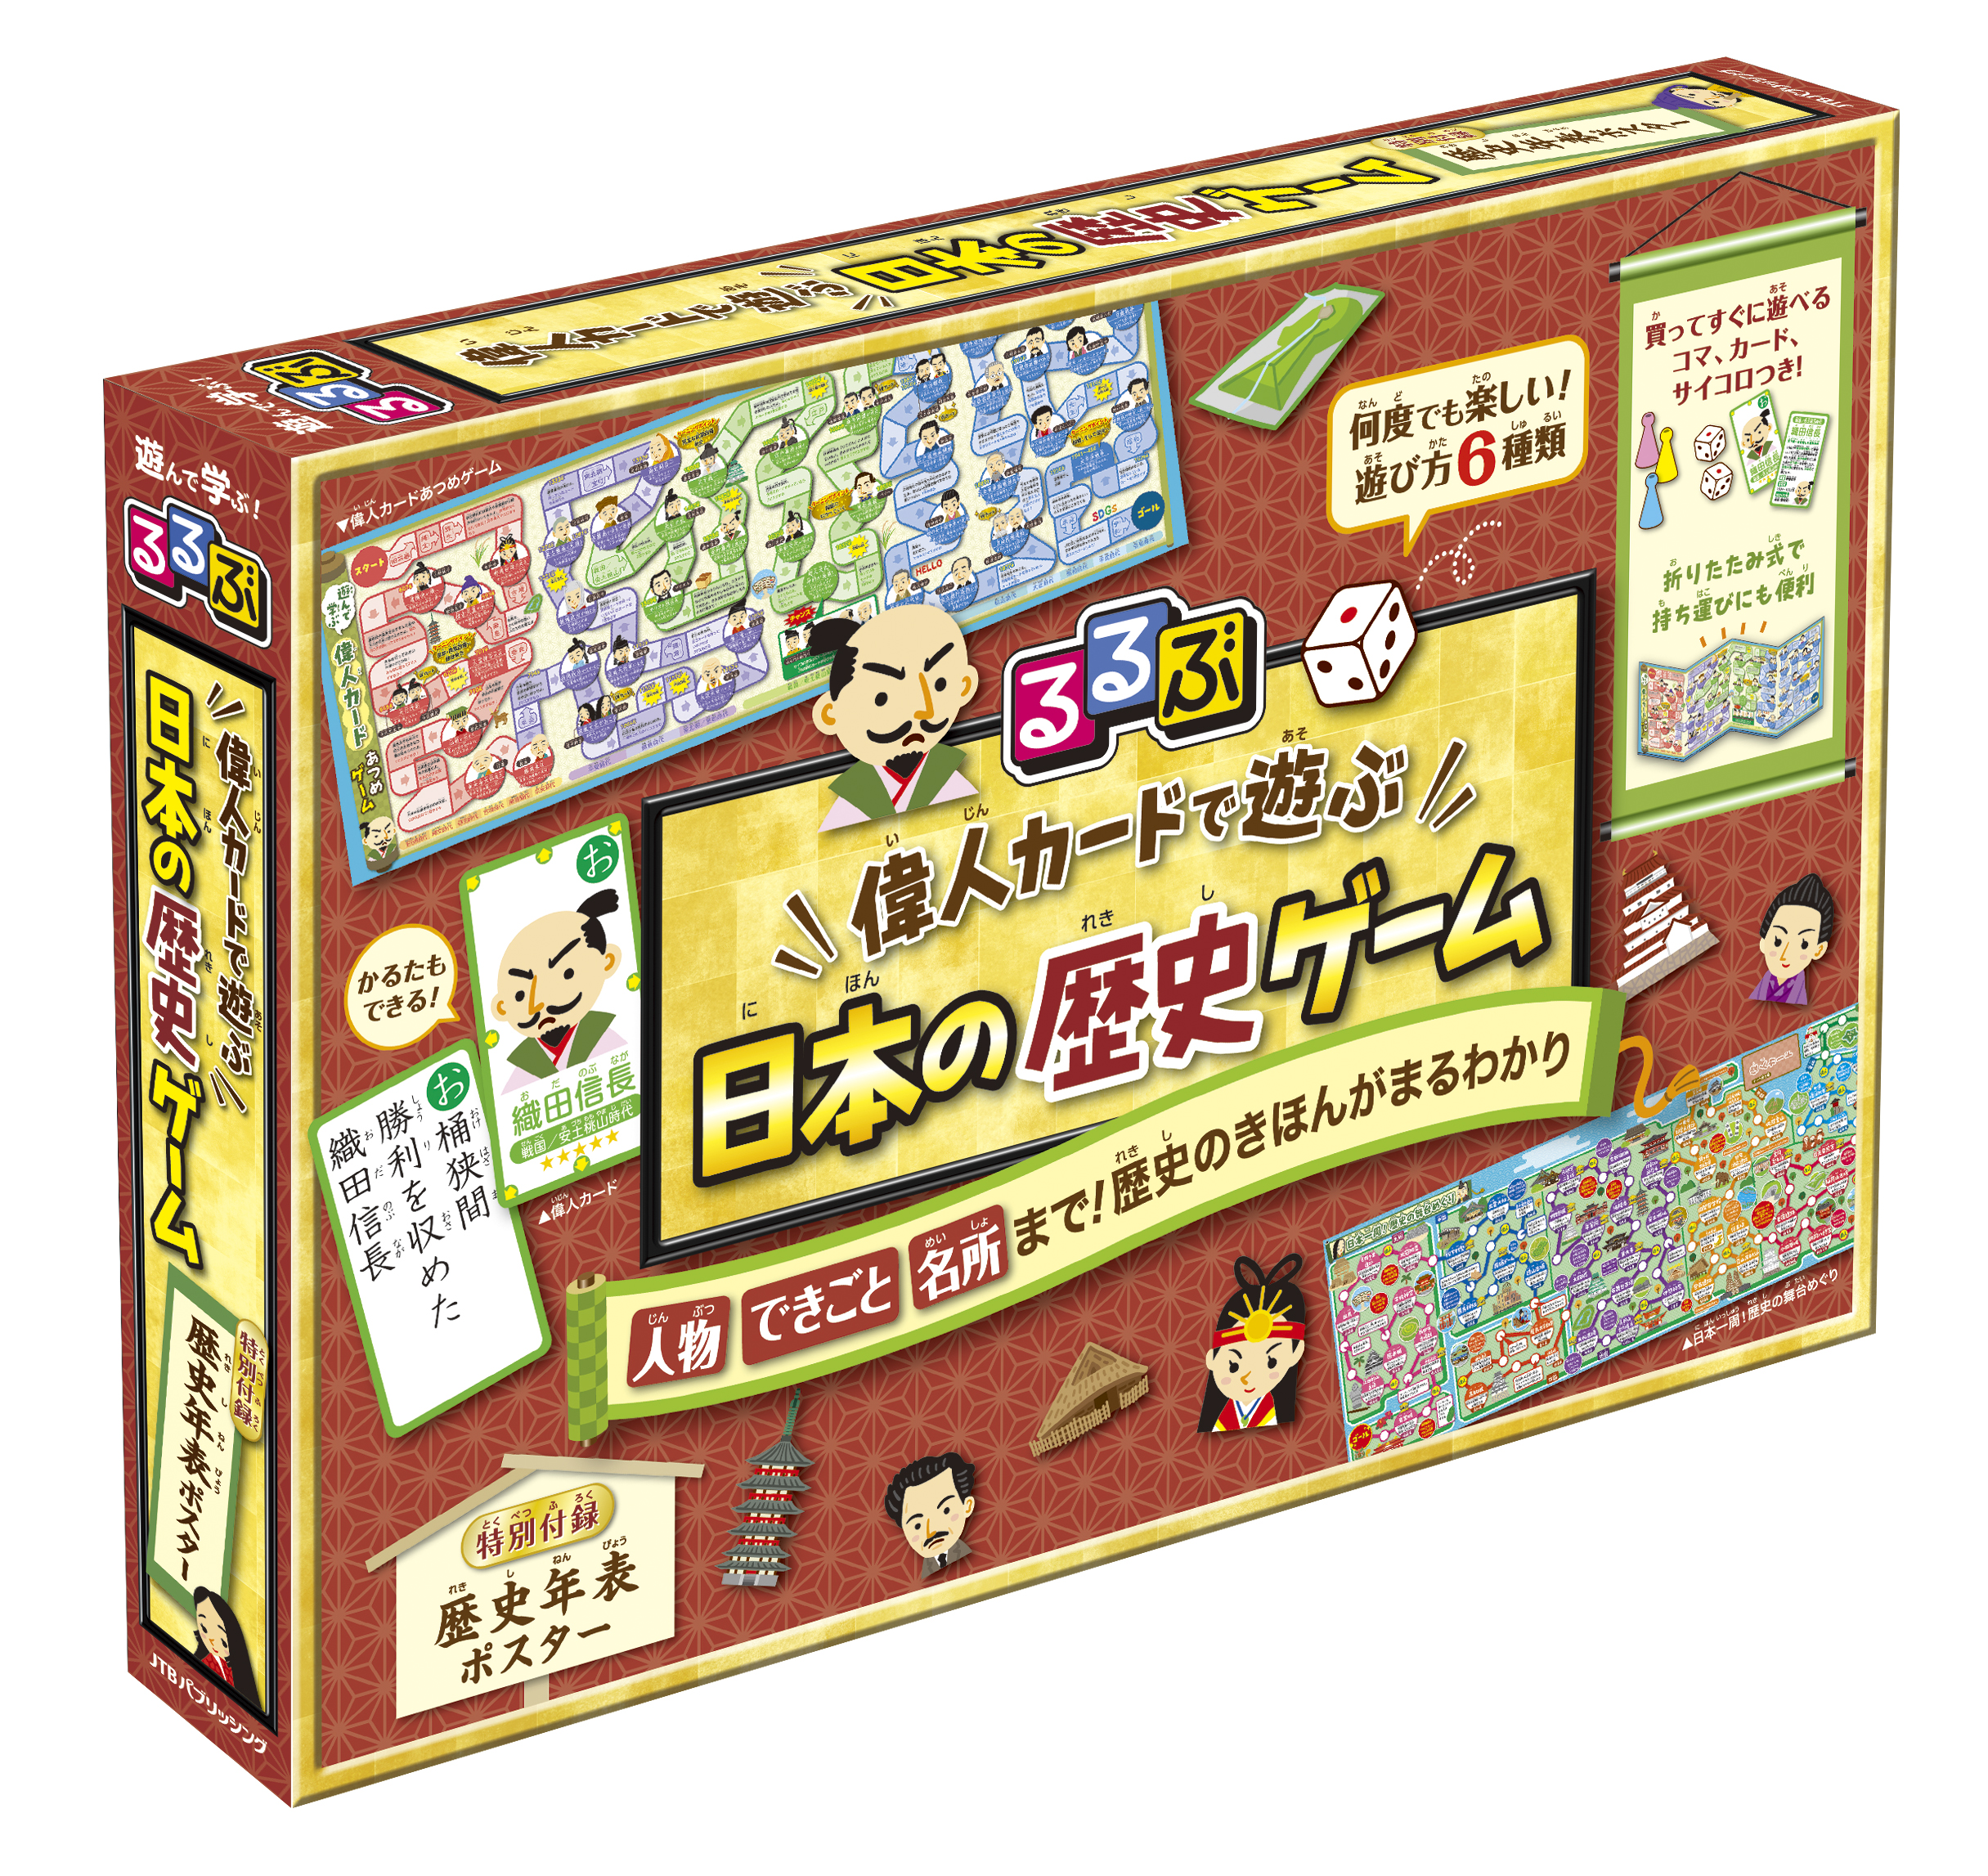 るるぶ 偉人カードで遊ぶ 日本の歴史ゲームの商品画像